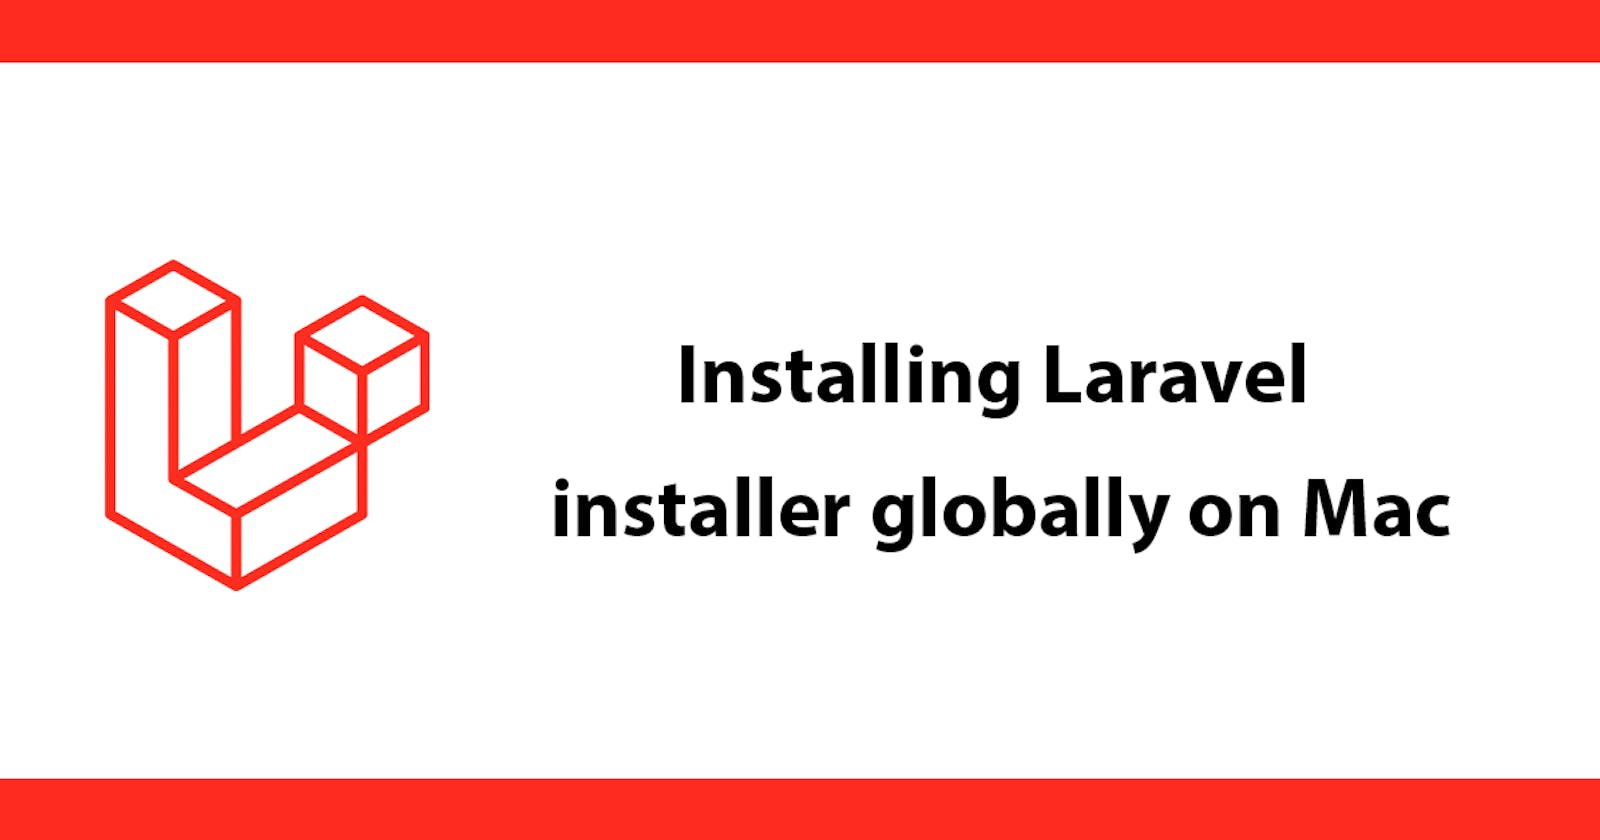 Installing Laravel installer globally on Mac